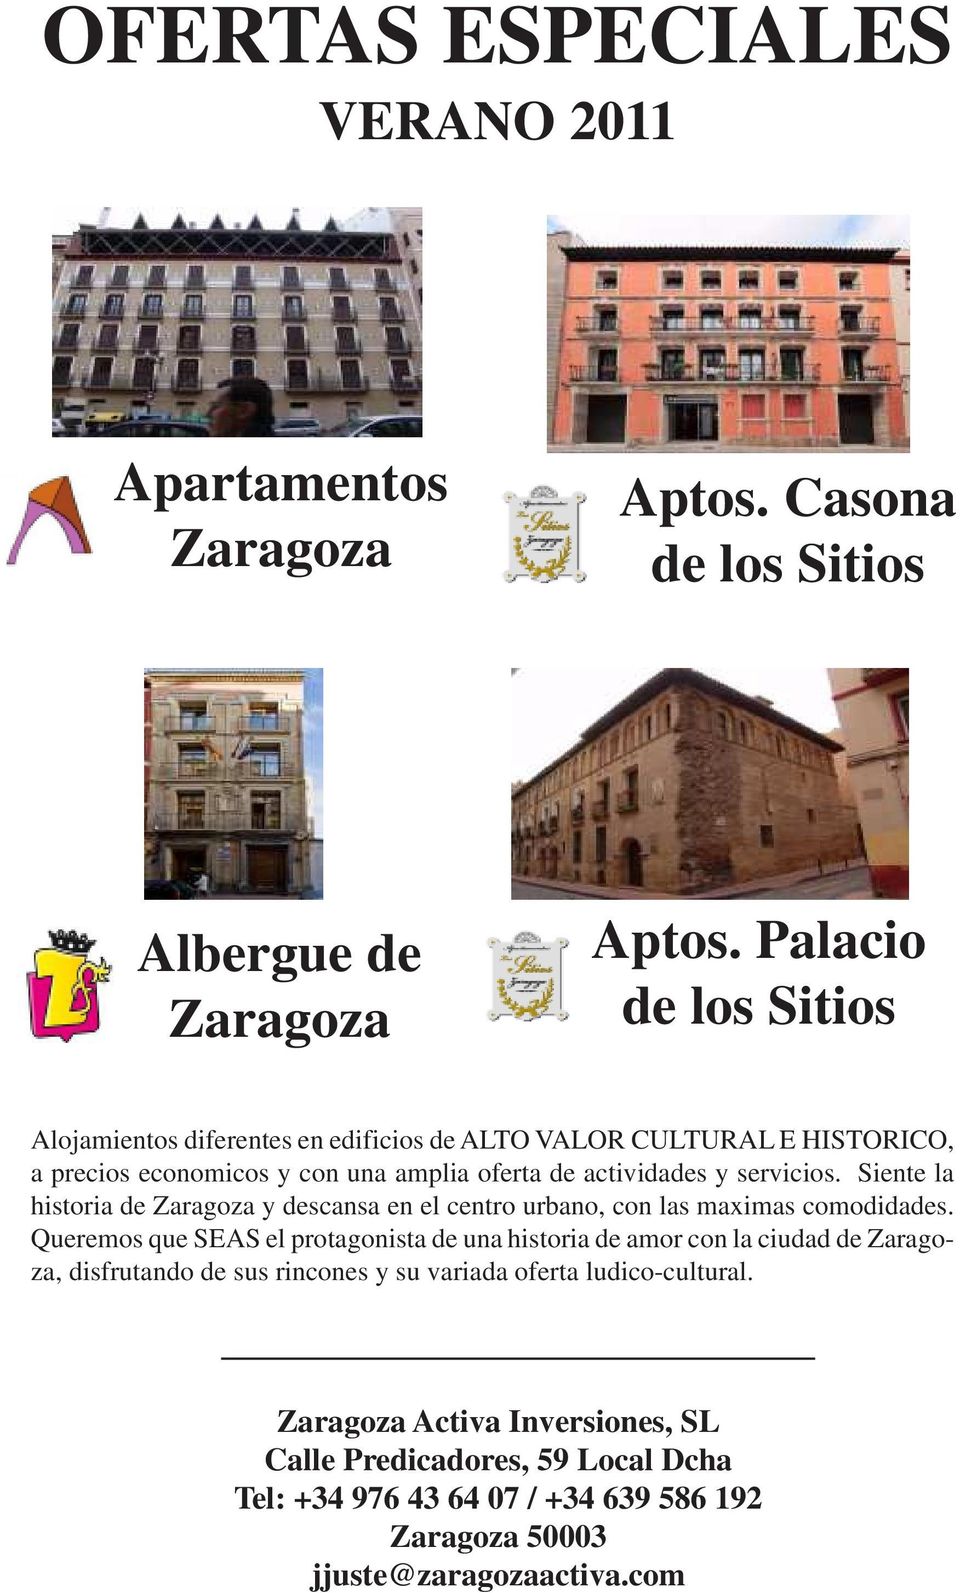 Siente la historia de Zaragoza y descansa en el centro urbano, con las maximas comodidades.